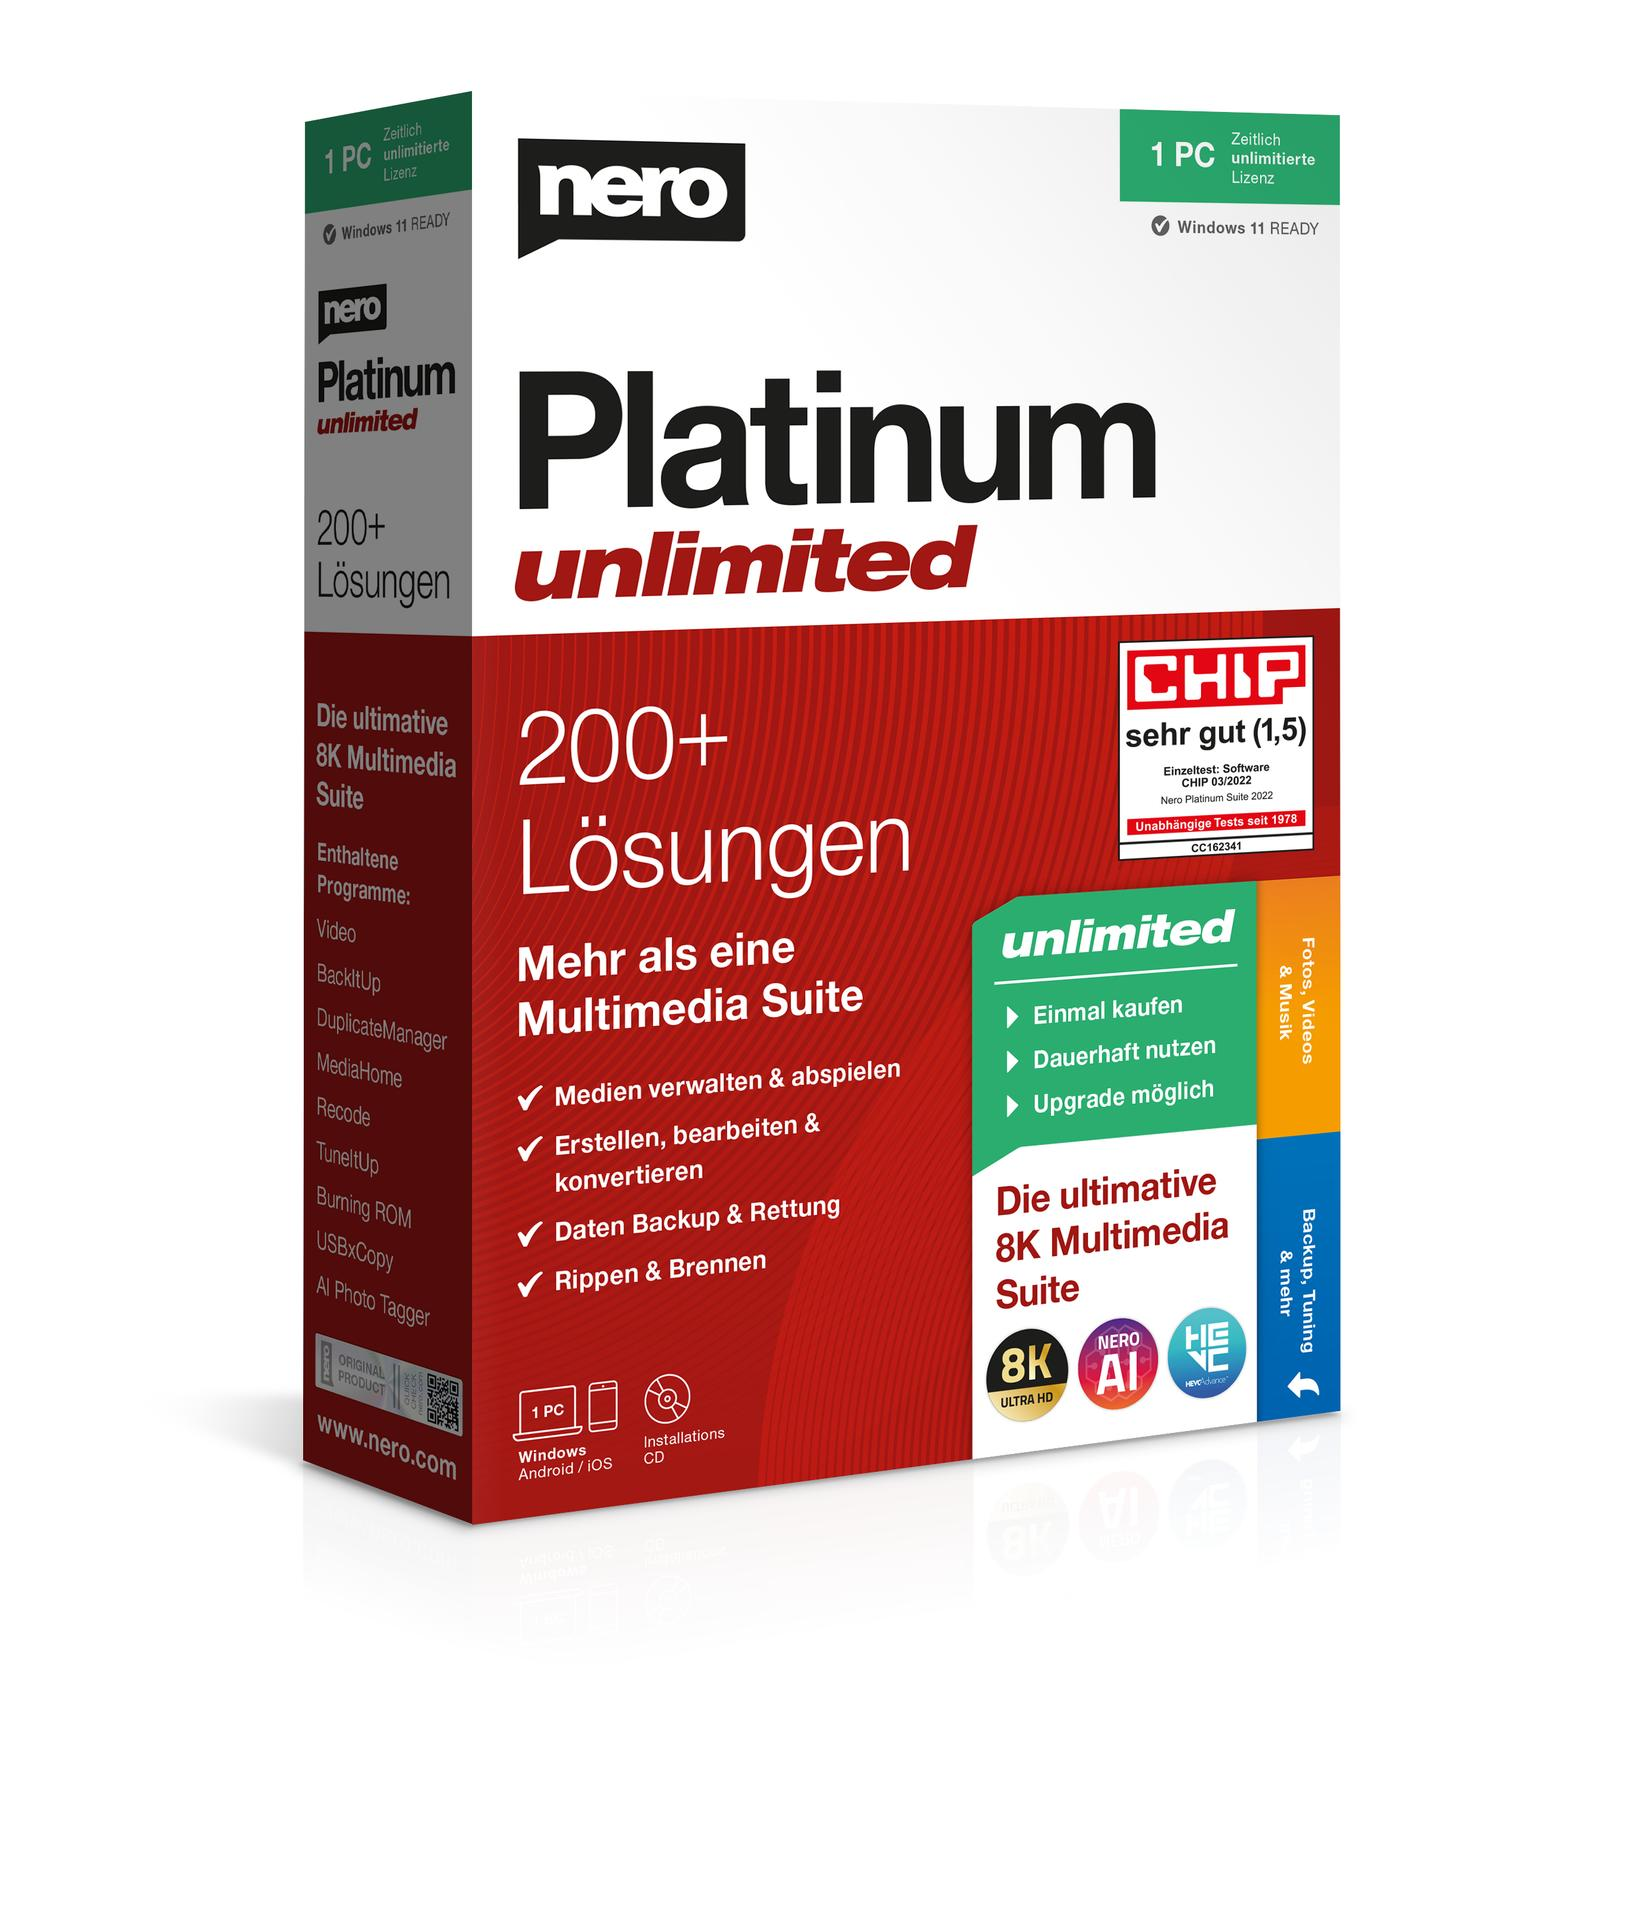 Nero Platinum unlimited - [PC